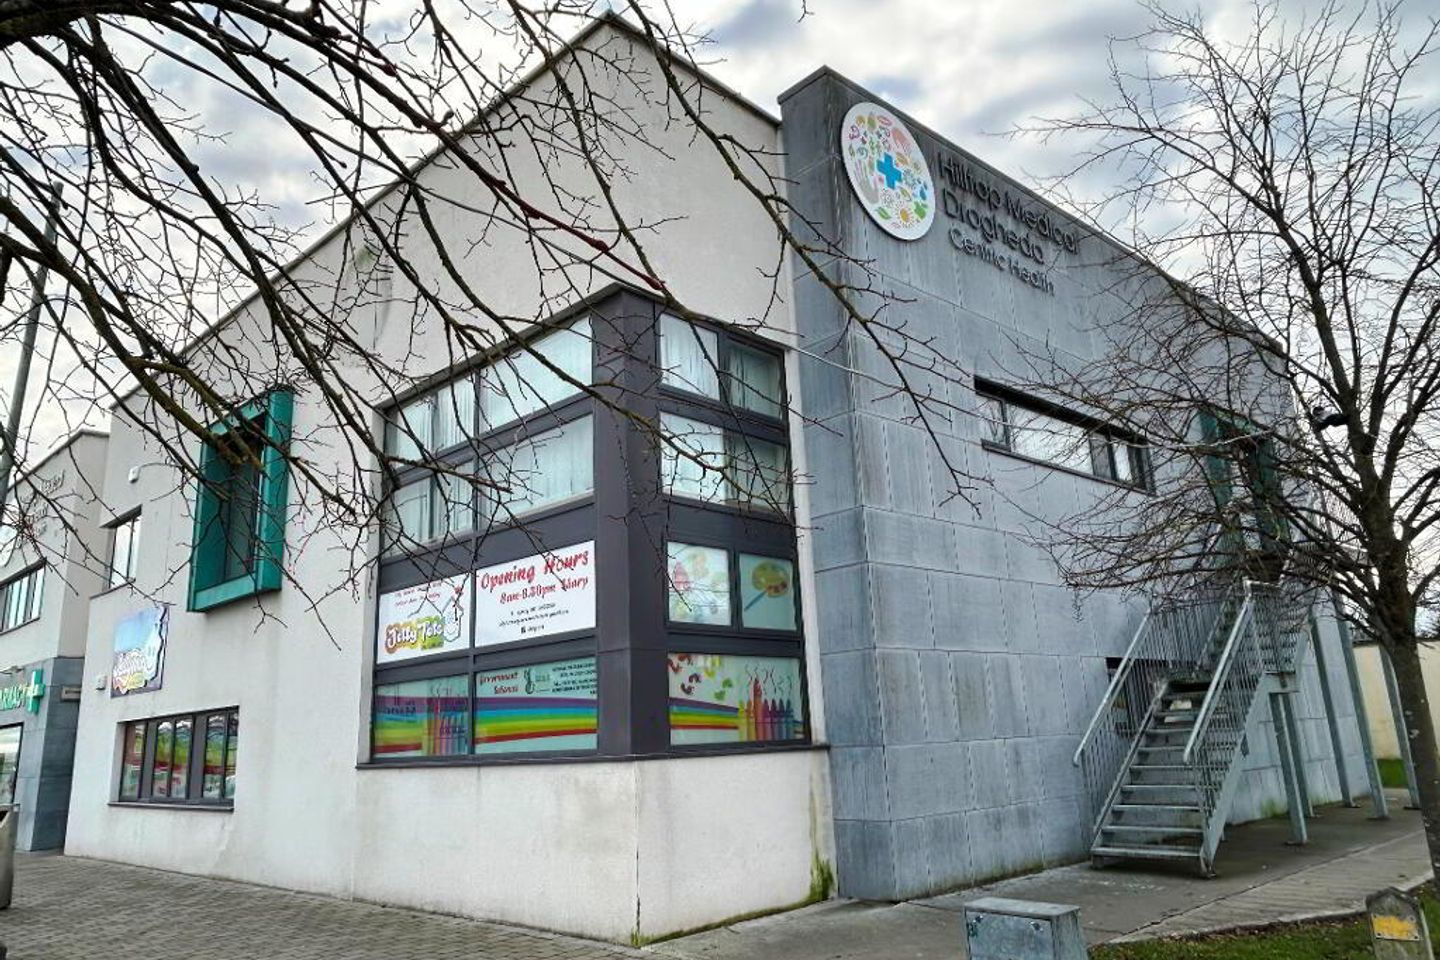 Rathmullan Neighbourhood Centre,First Floor Commercial Premises, Rathmullan Road, Drogheda, Co. Louth